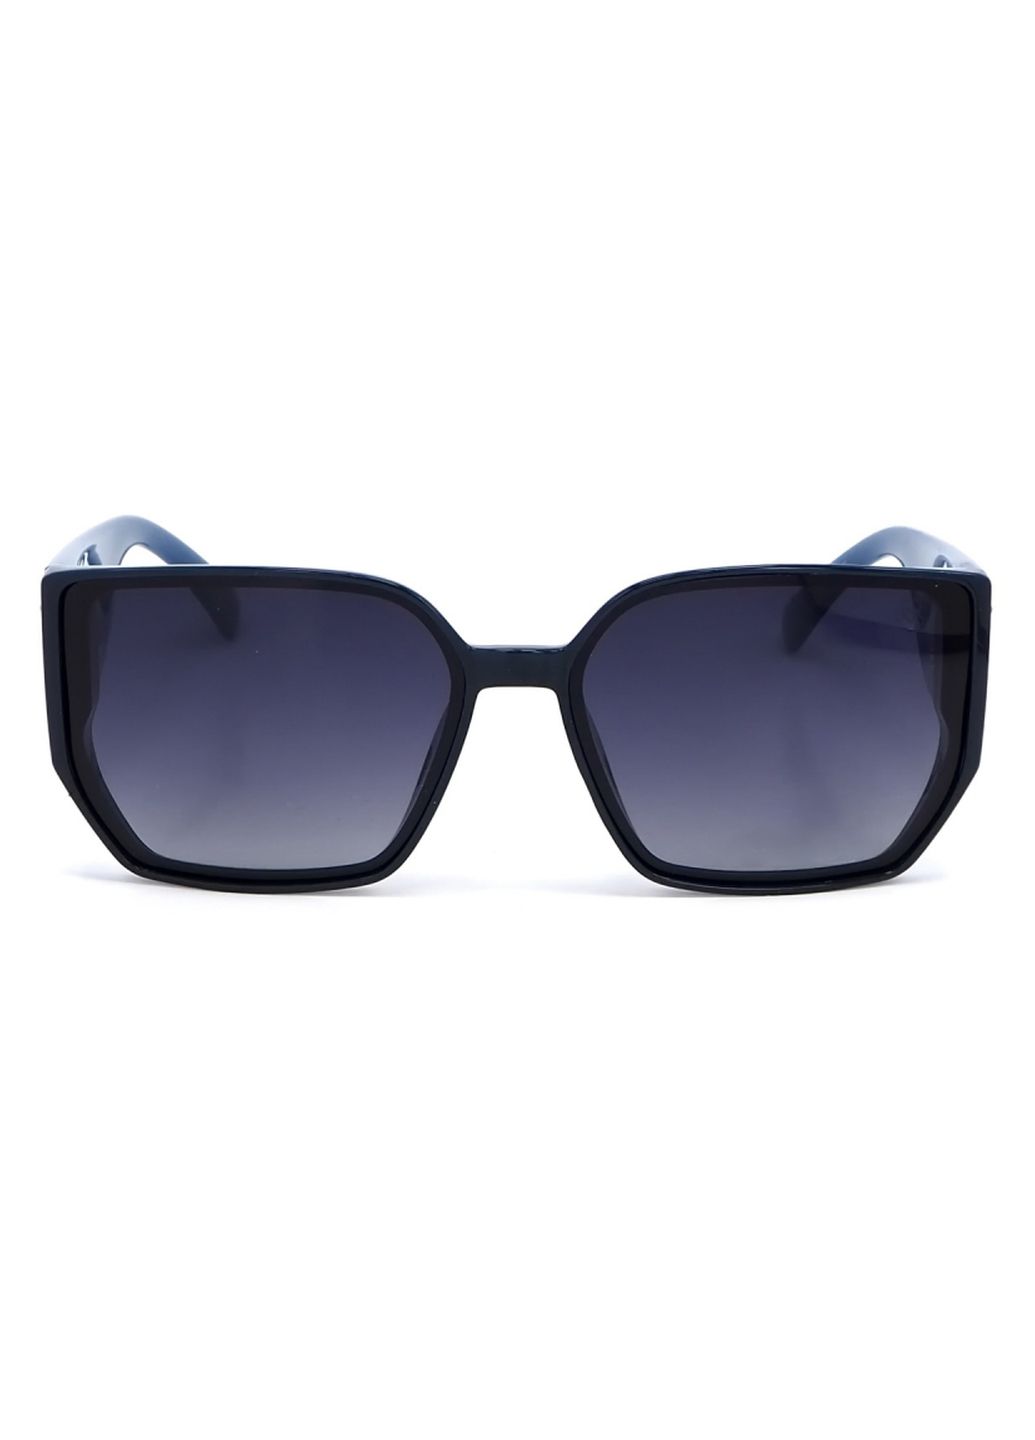 Купить Женские солнцезащитные очки Roberto с поляризацией RM8449 113041 в интернет-магазине